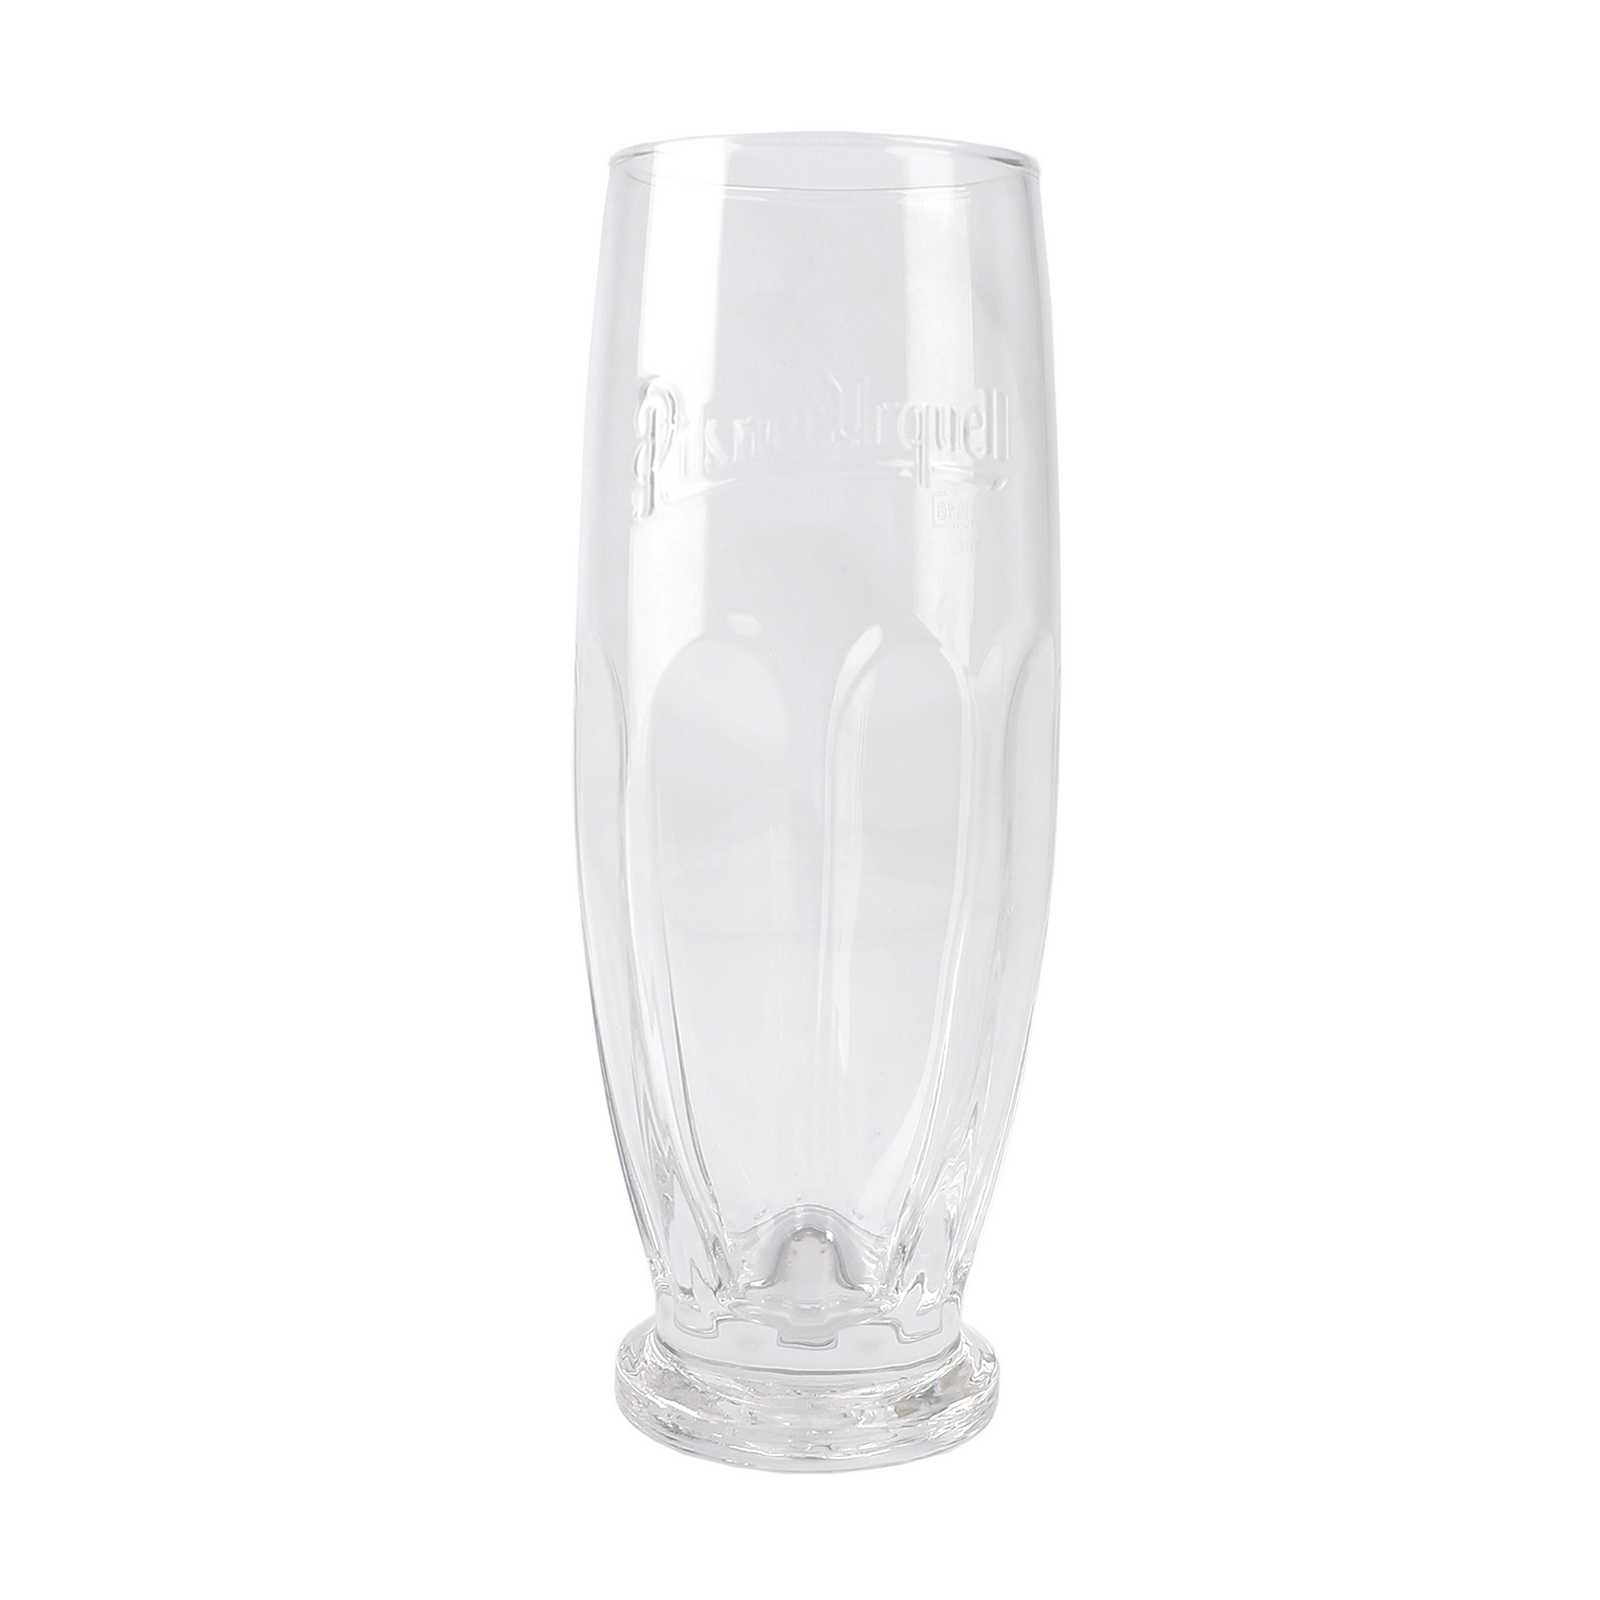 Pilsner Urquell Original 0.5 l glass